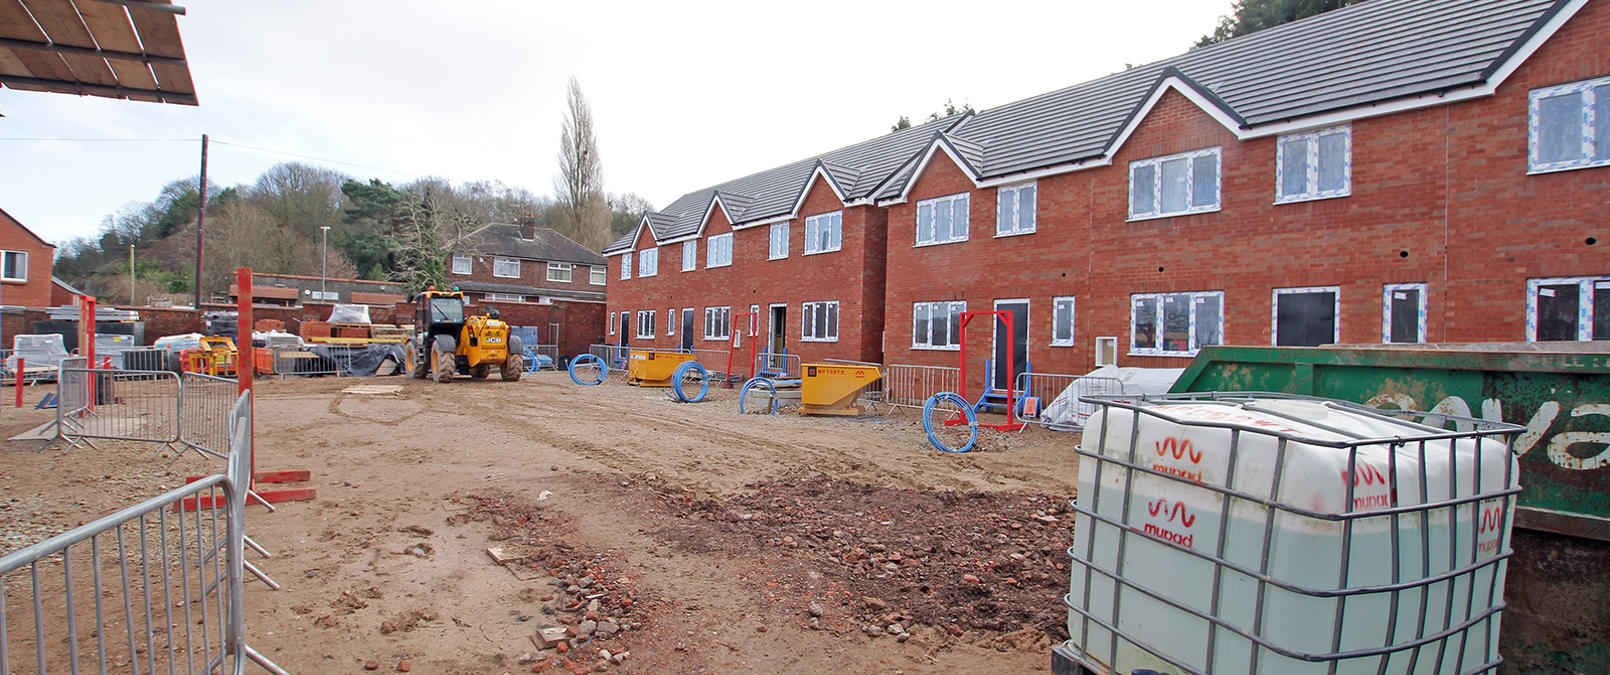 New homes on Nottingham Road in Stapleford